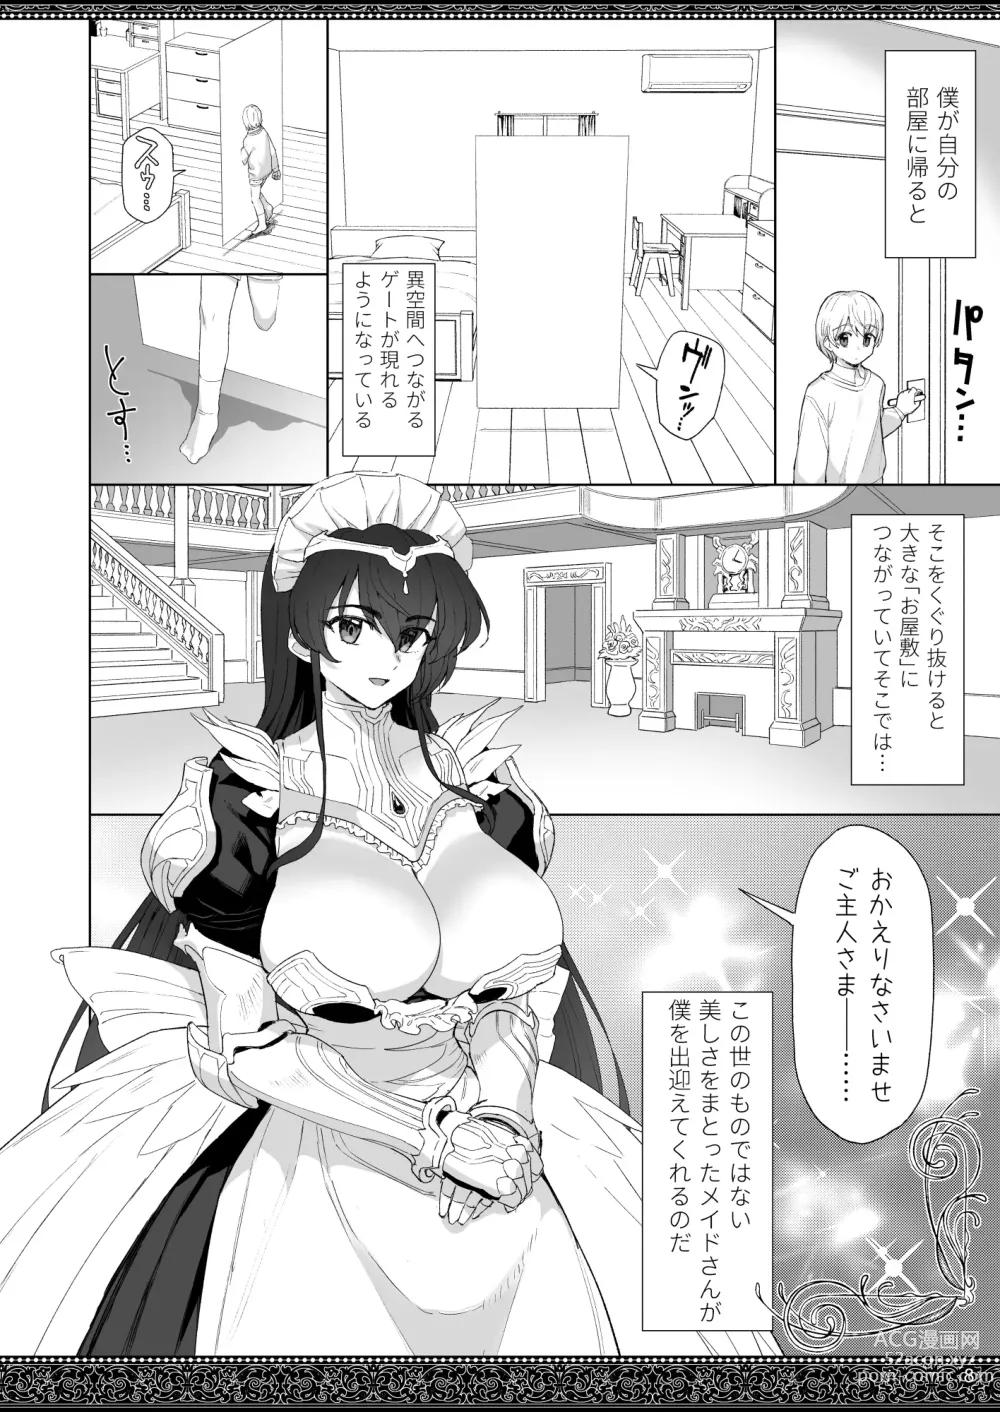 Page 8 of doujinshi Tenjousekai no Maid-tachi 2